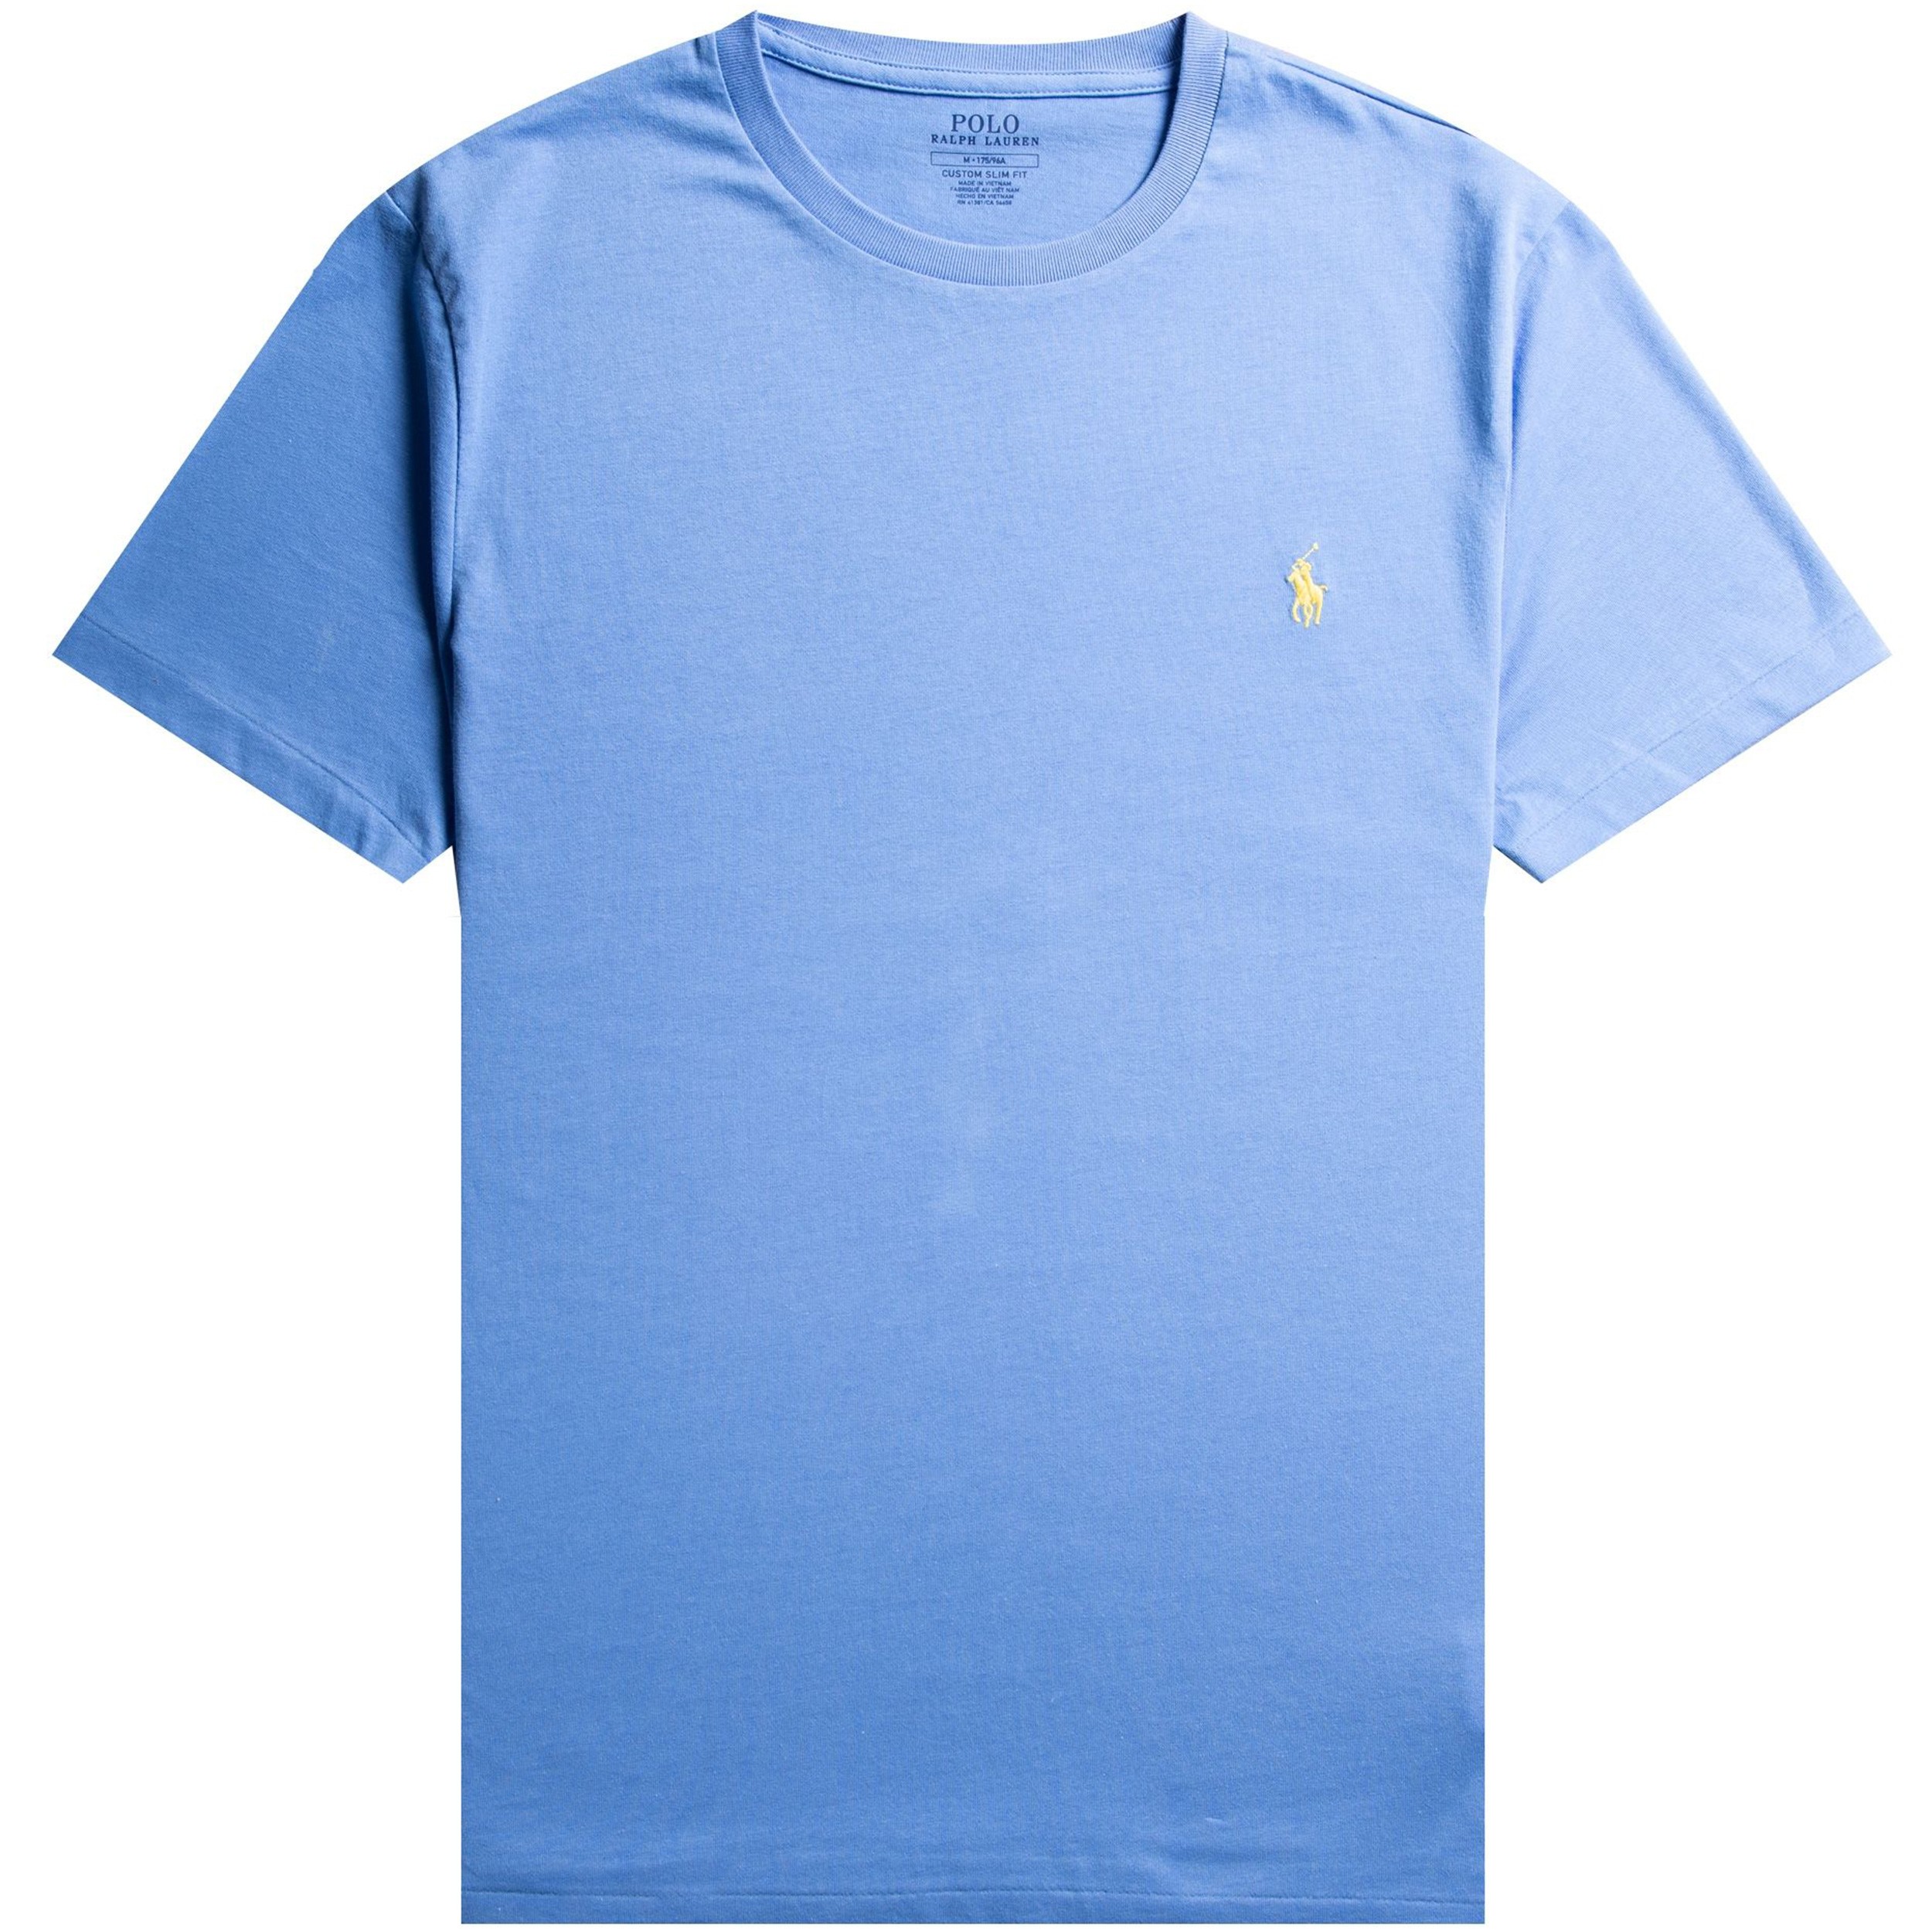 kompakt ikke udkast Polo Ralph Lauren Ralph Lauren Custom Slim Fit Crew Neck T-Shirt Baby Blue